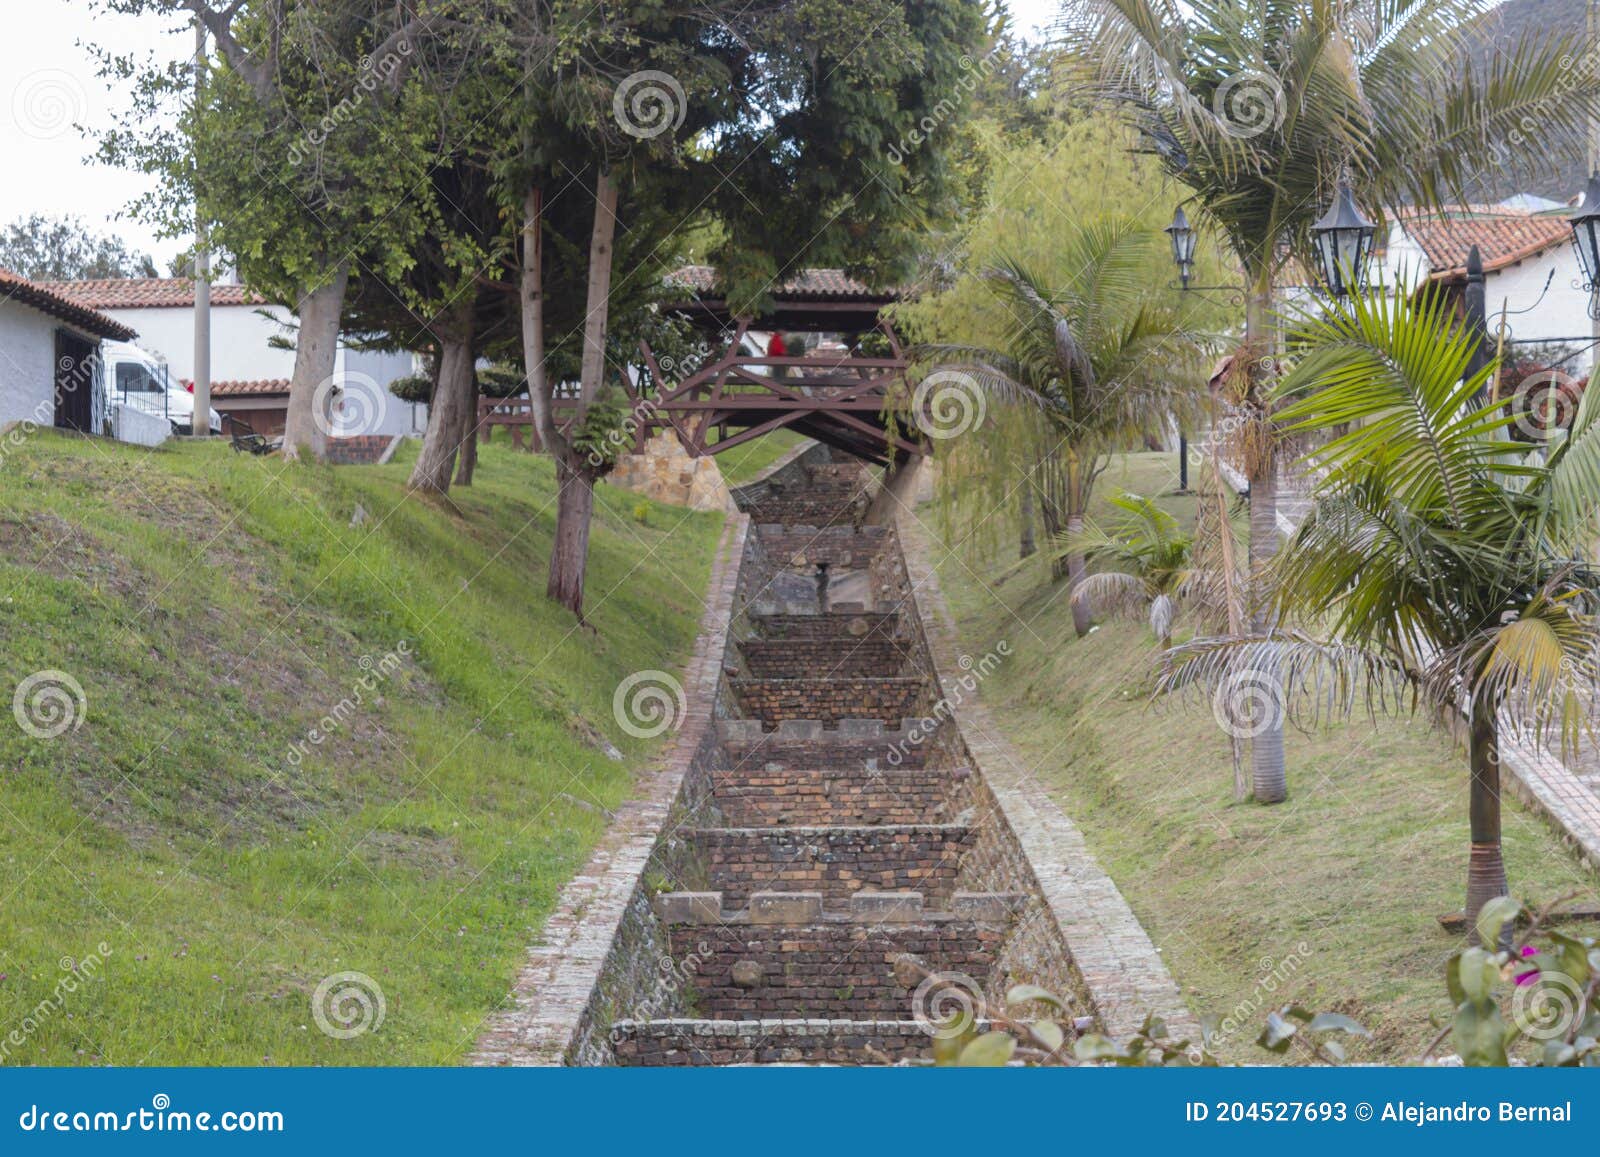 guatavita main river with lovers bridge or in spanish `puente de los enamorados` with grass garden